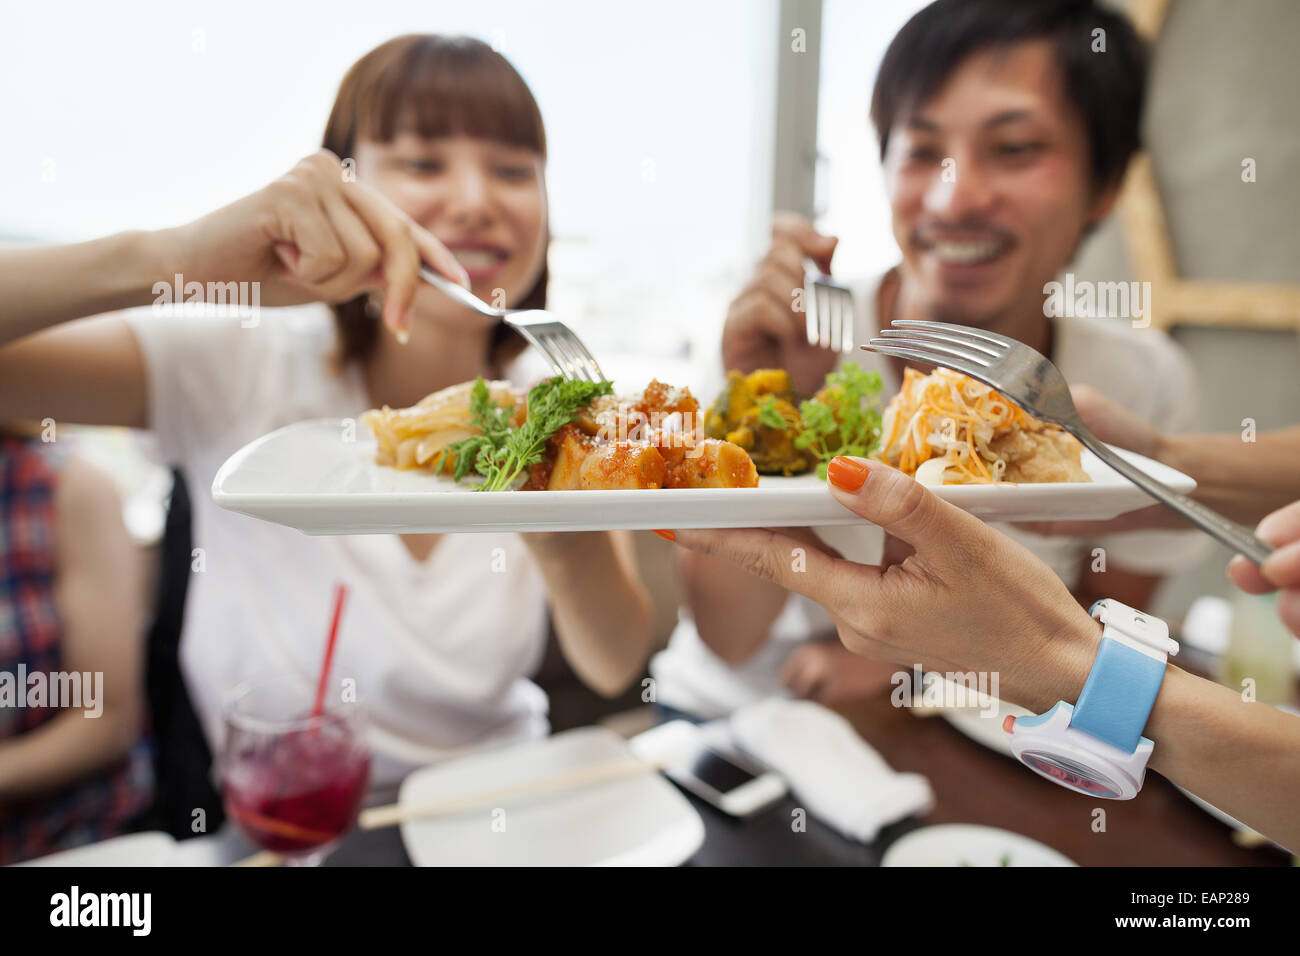 Gruppe von Freunden, die gemeinsame Mahlzeit. Stockfoto